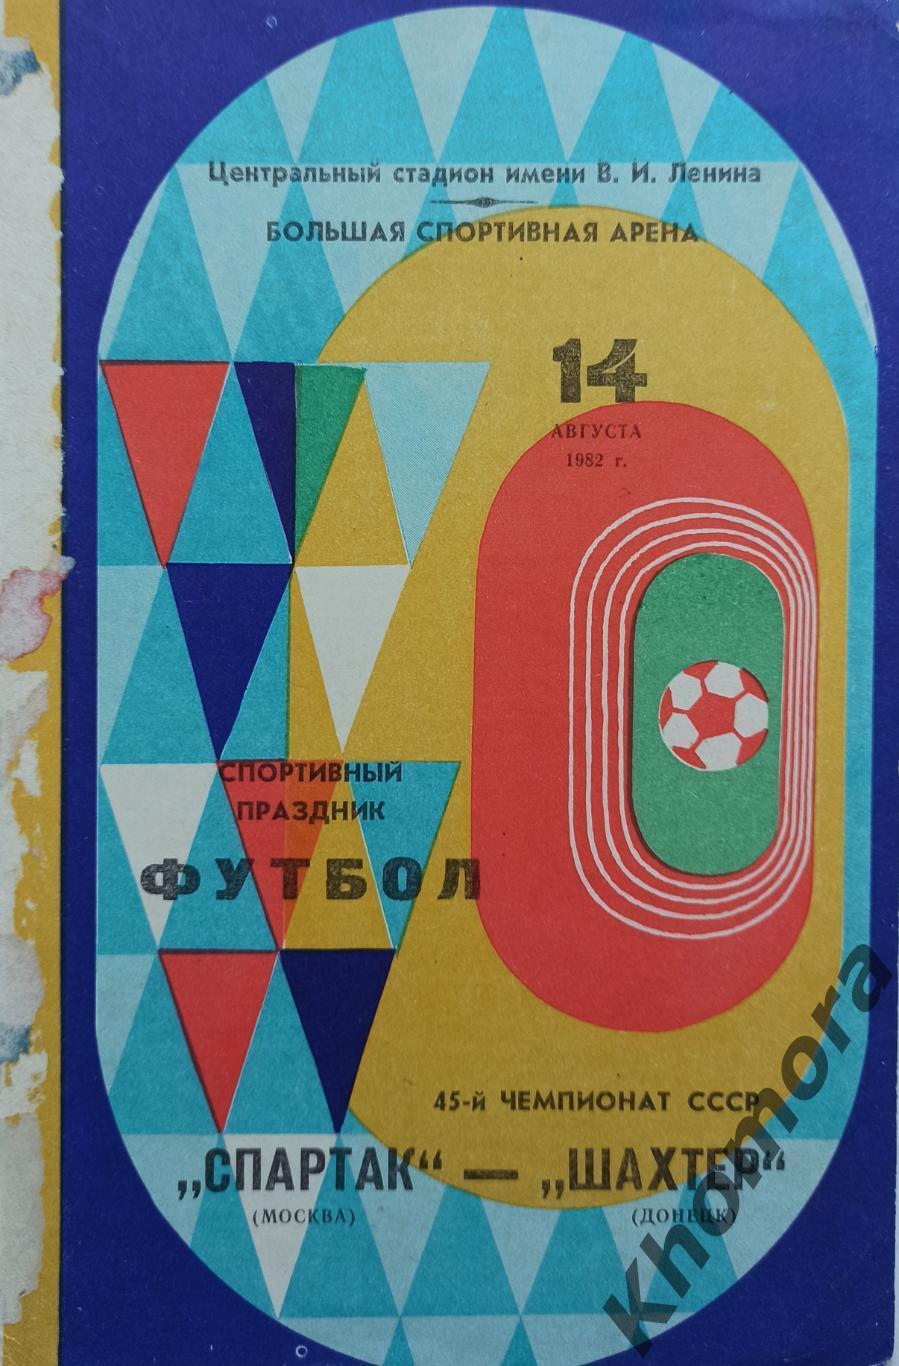 Спартак (Москва) - Шахтер (Донецк) 14.08.1982 - официальная программа